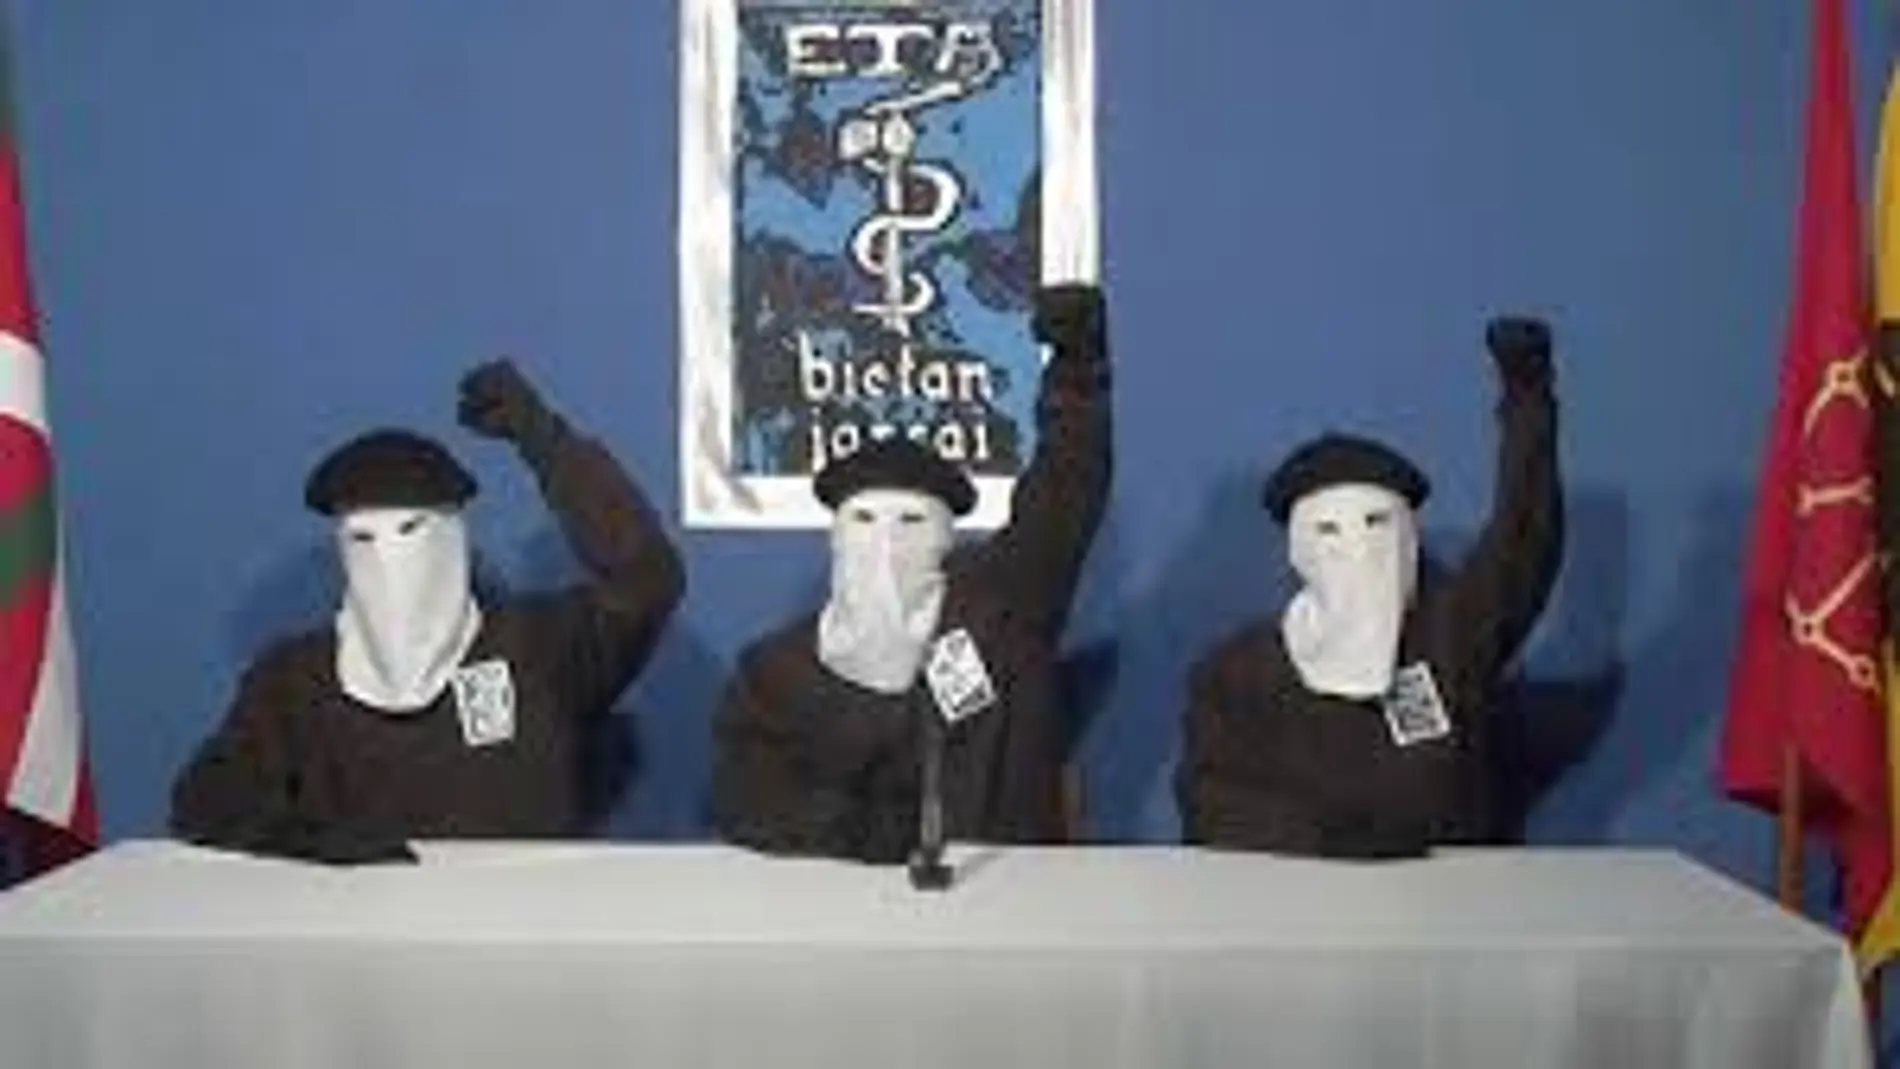 Miembros de la banda terrorista ETA